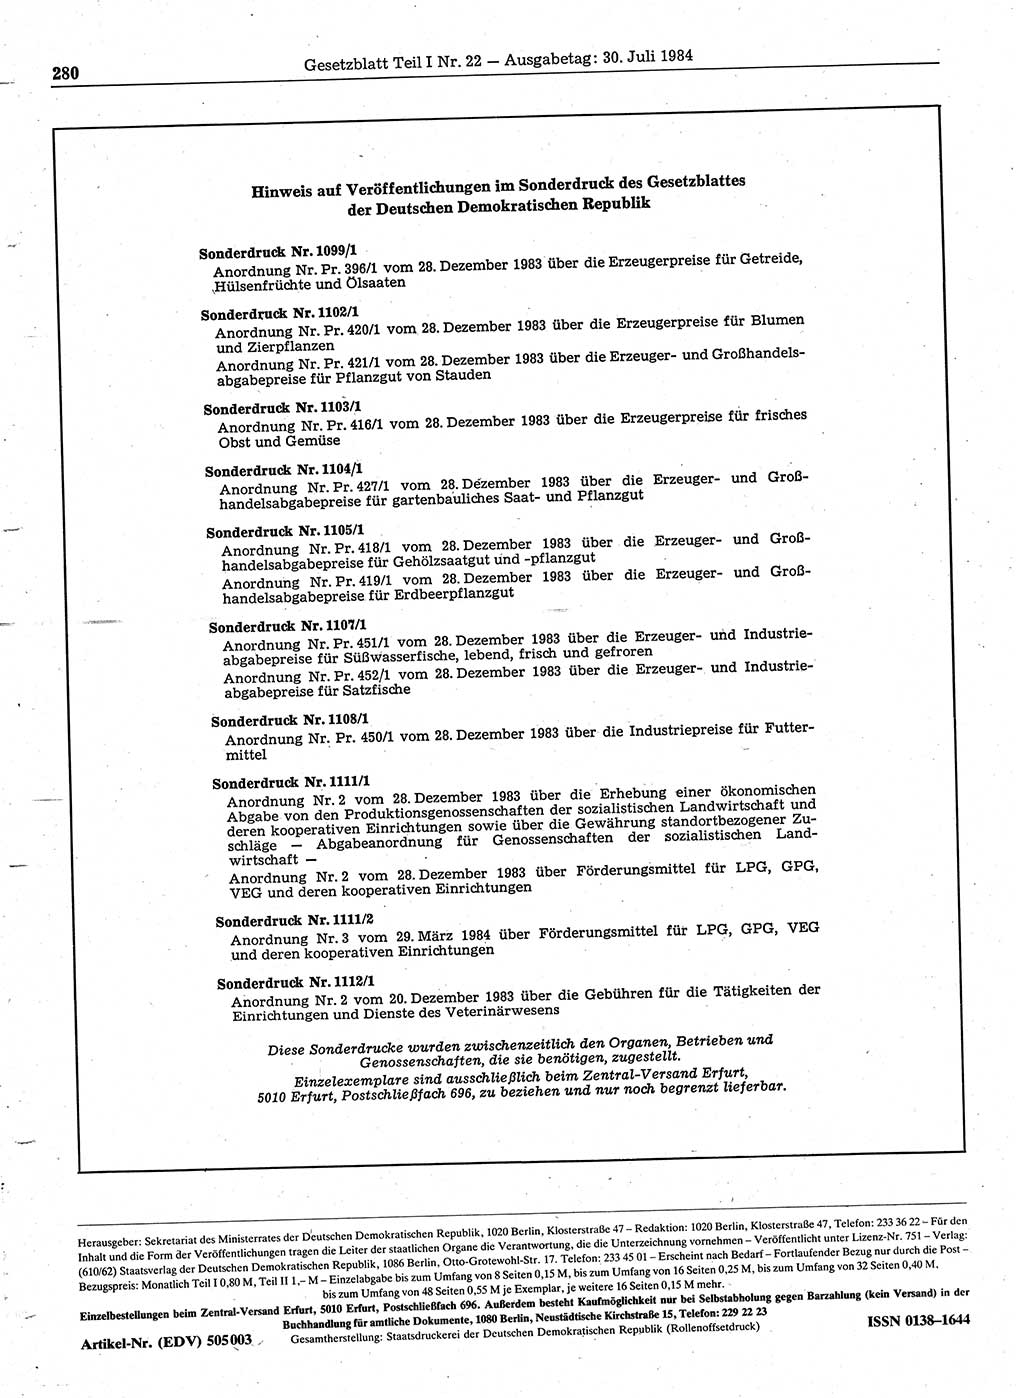 Gesetzblatt (GBl.) der Deutschen Demokratischen Republik (DDR) Teil Ⅰ 1984, Seite 280 (GBl. DDR Ⅰ 1984, S. 280)